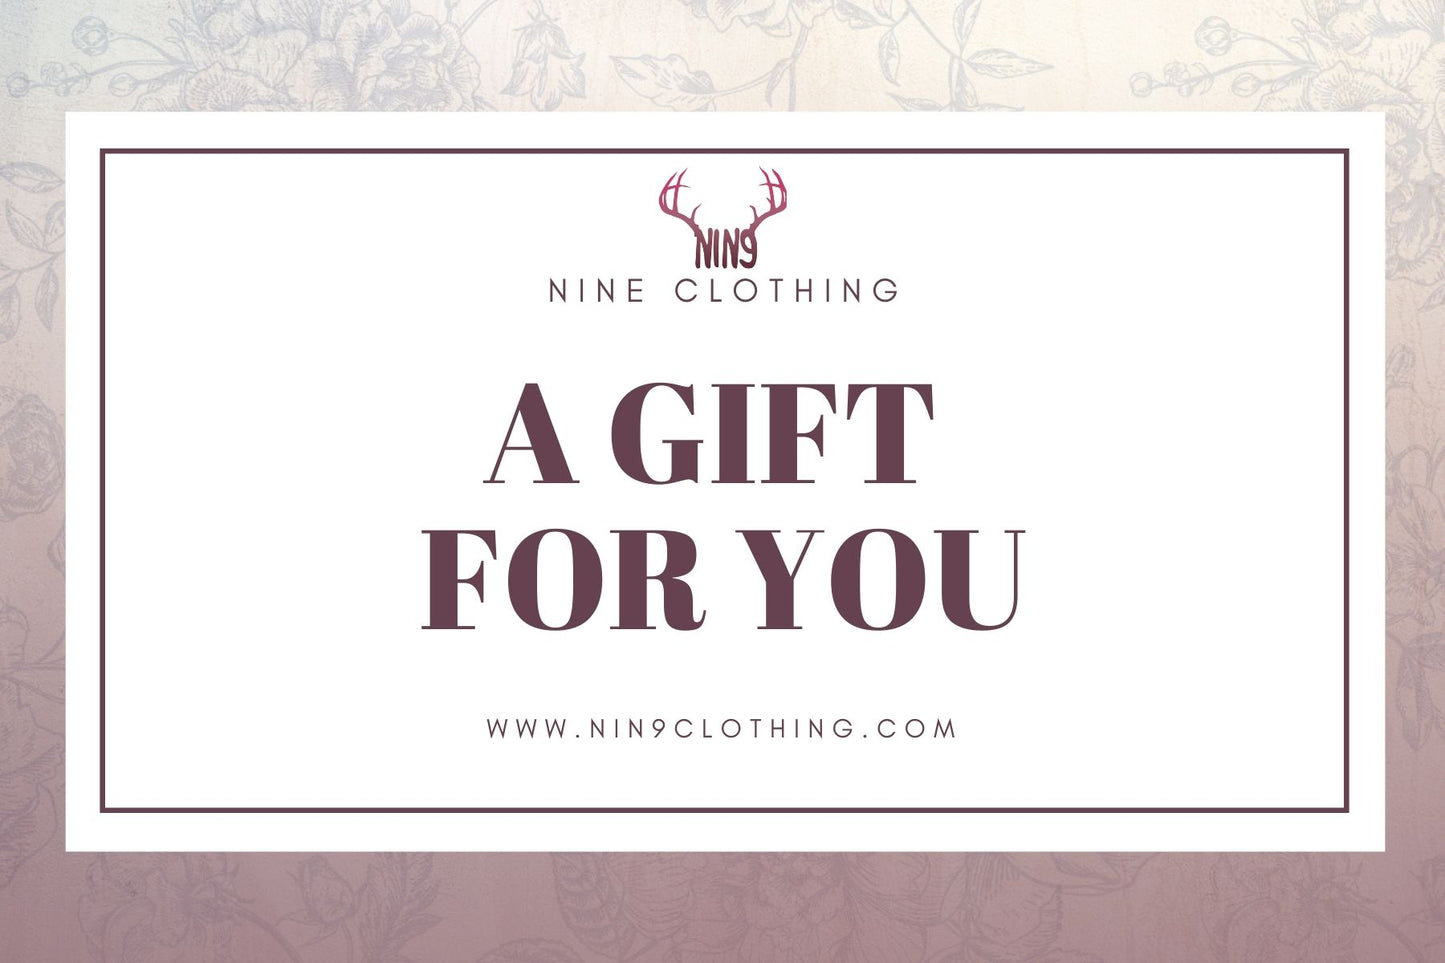 Gift card Nine clothing